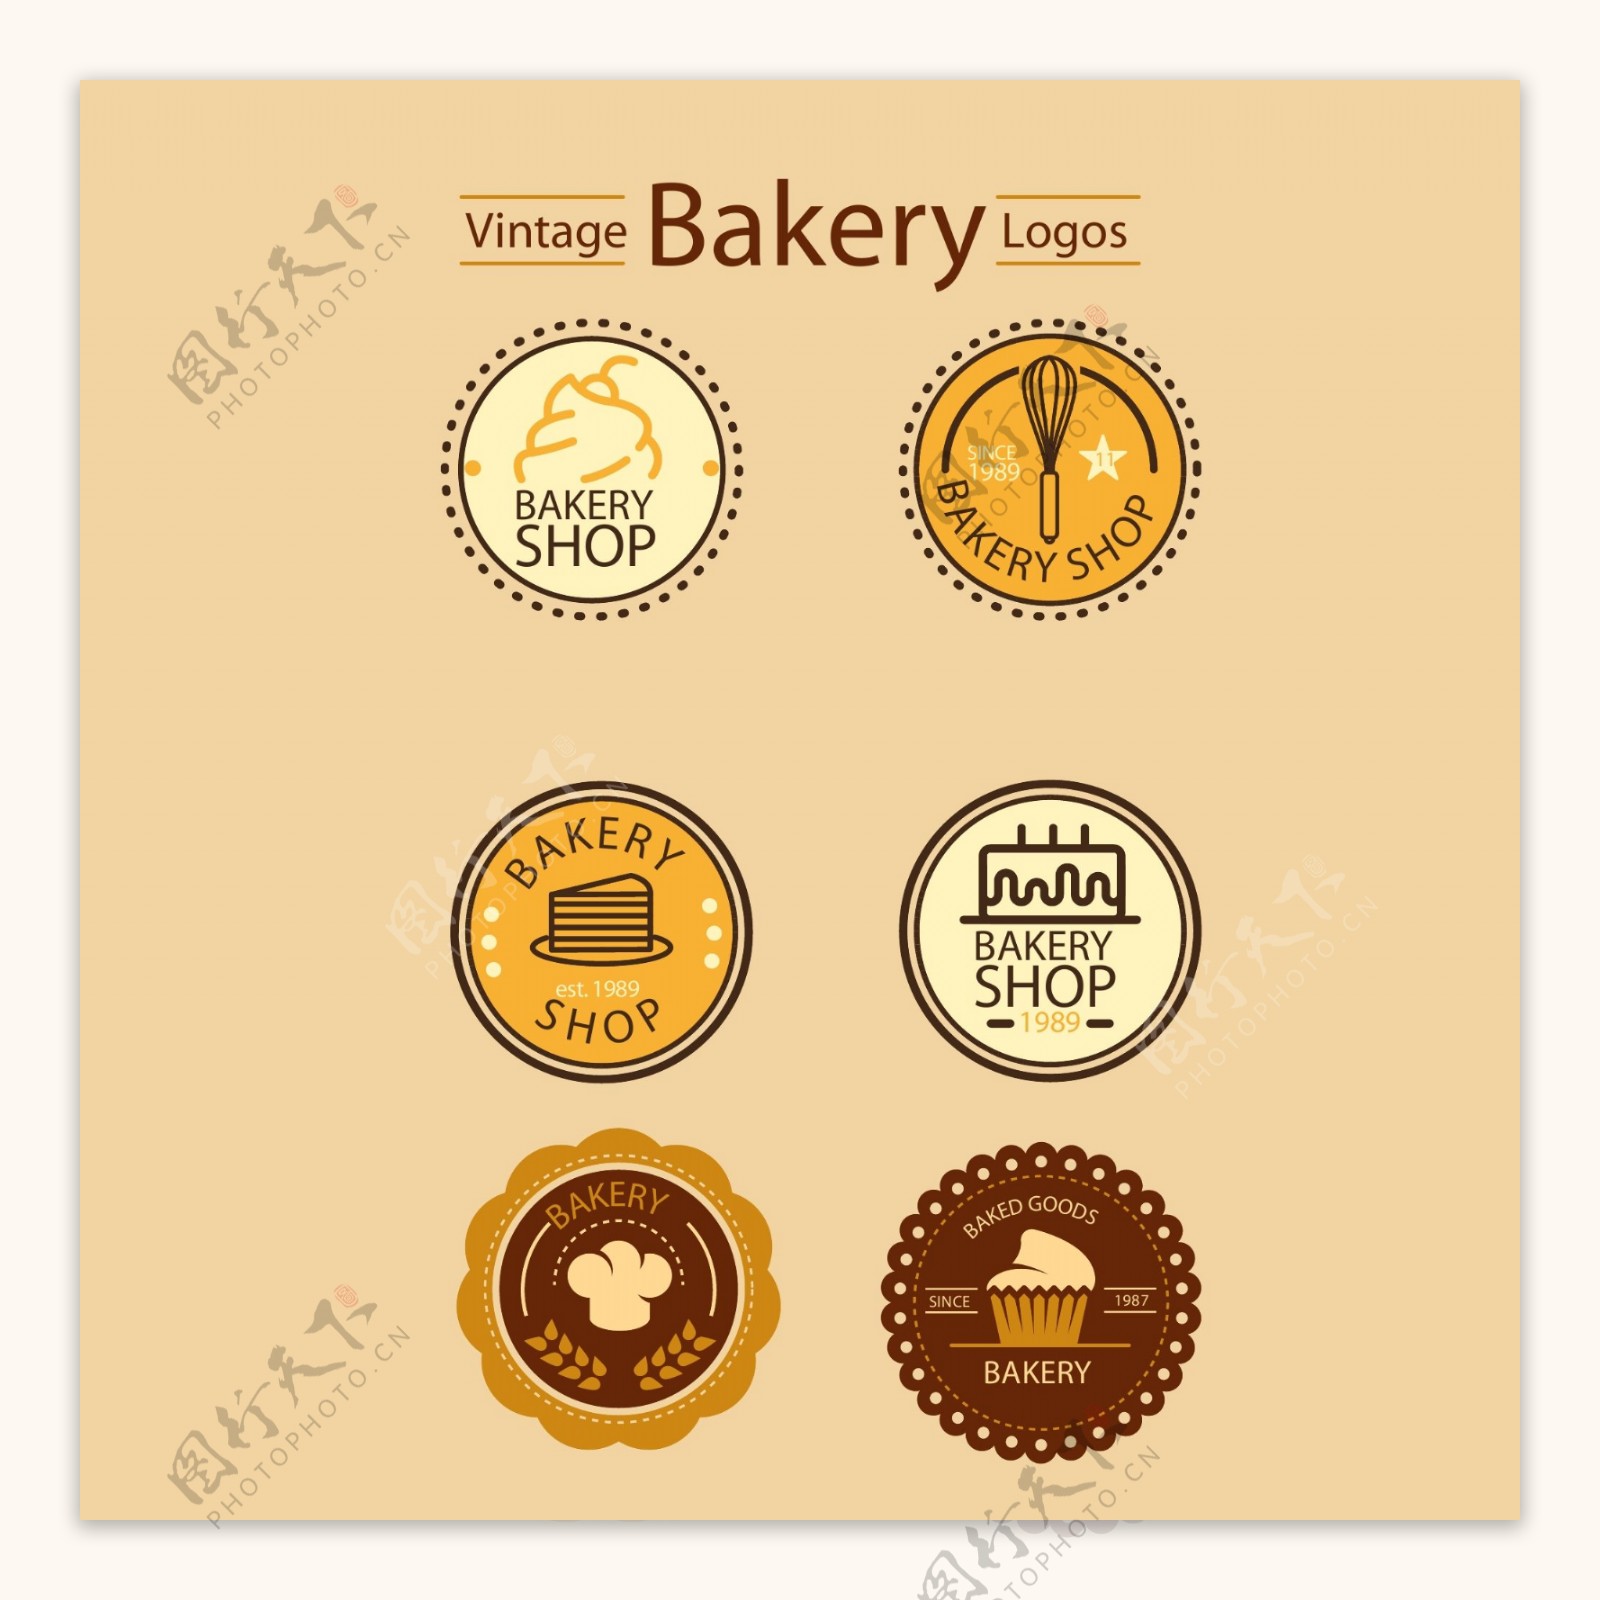 徽章样式的面包店标志素材